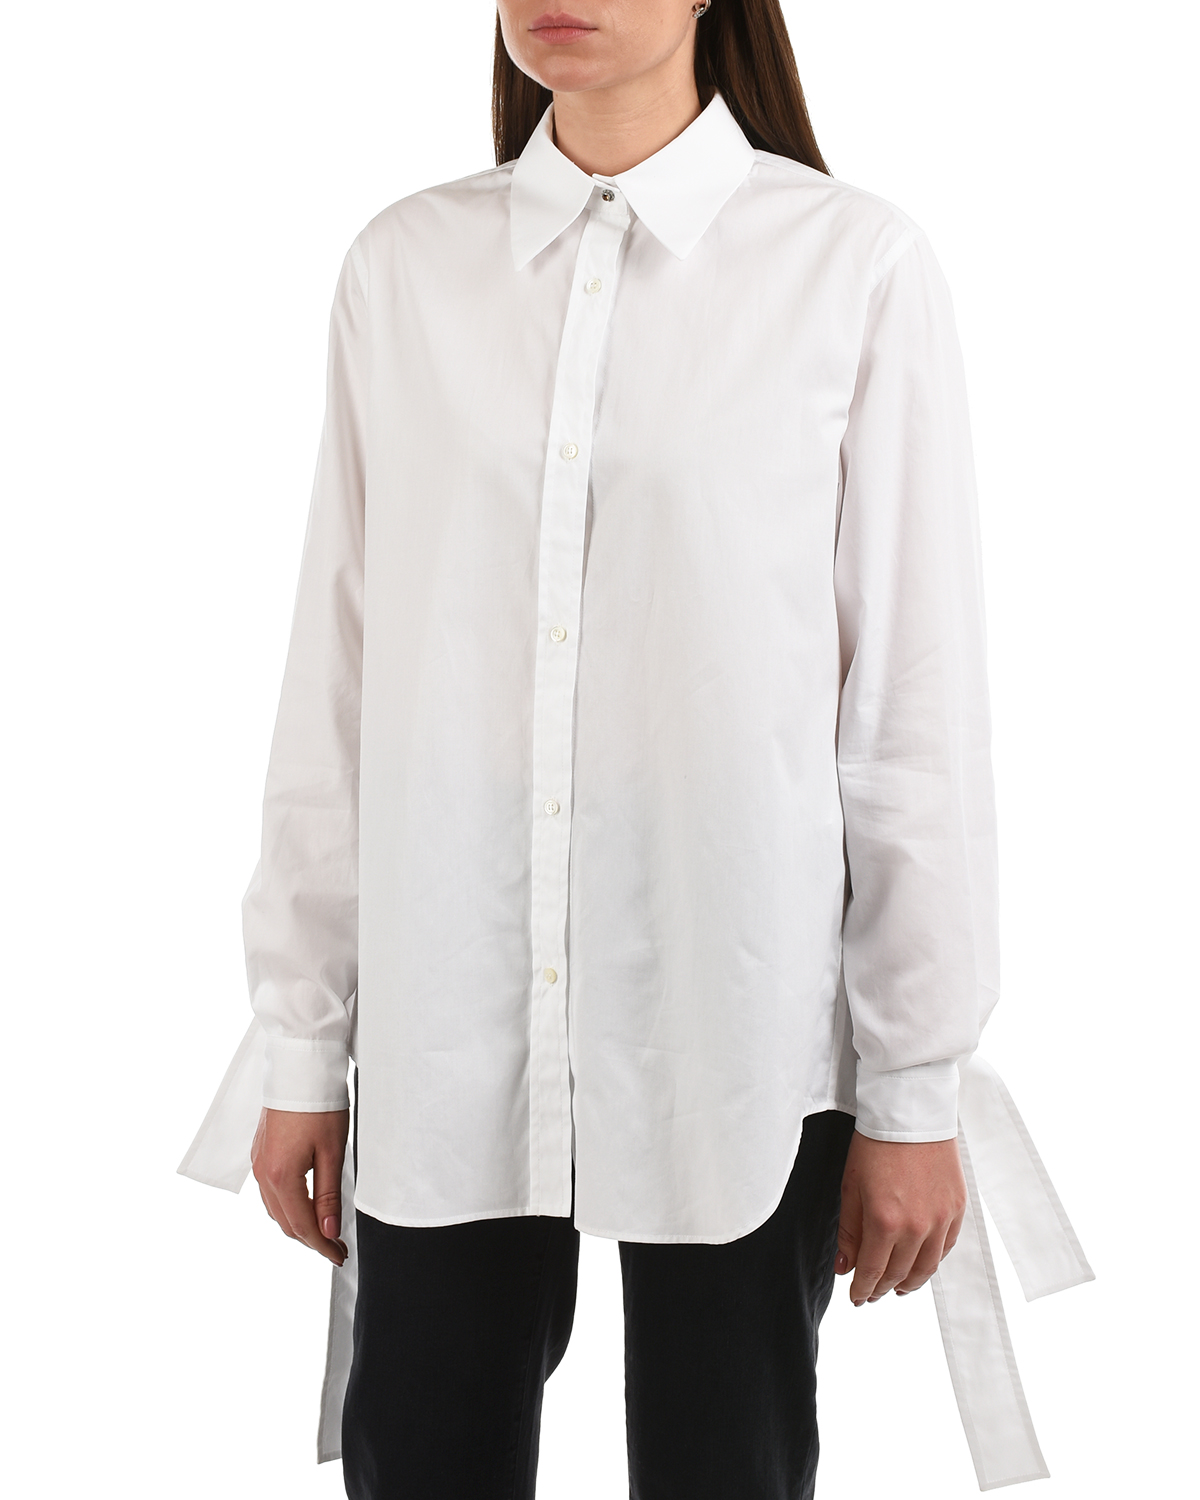 Удлиненная белая рубашка No. 21, размер 42, цвет белый - фото 10